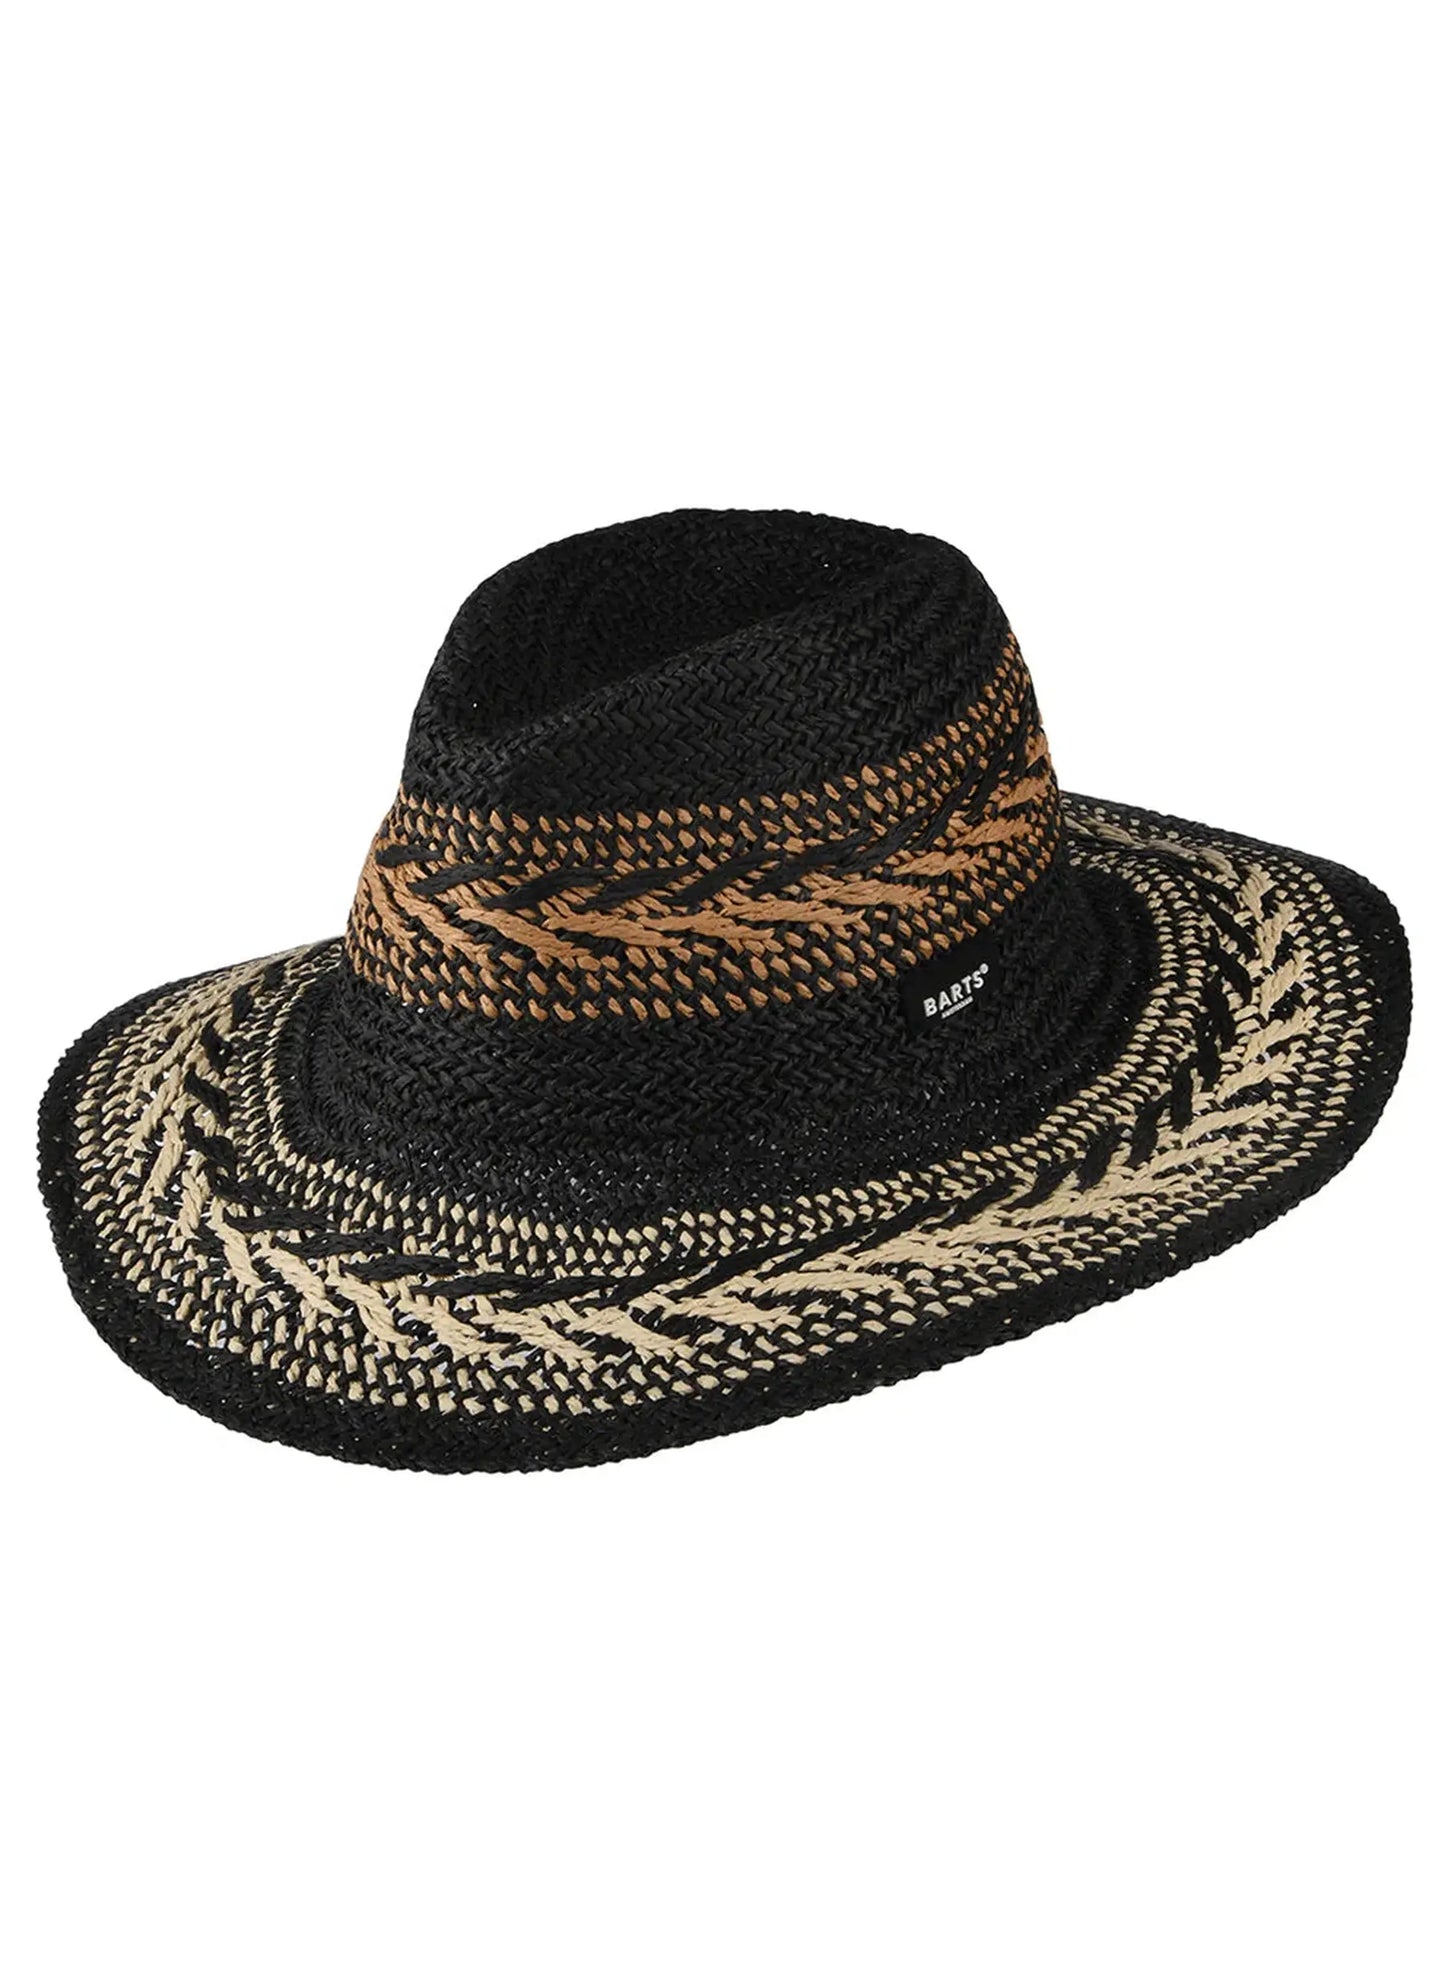 Caledona Hat - Black